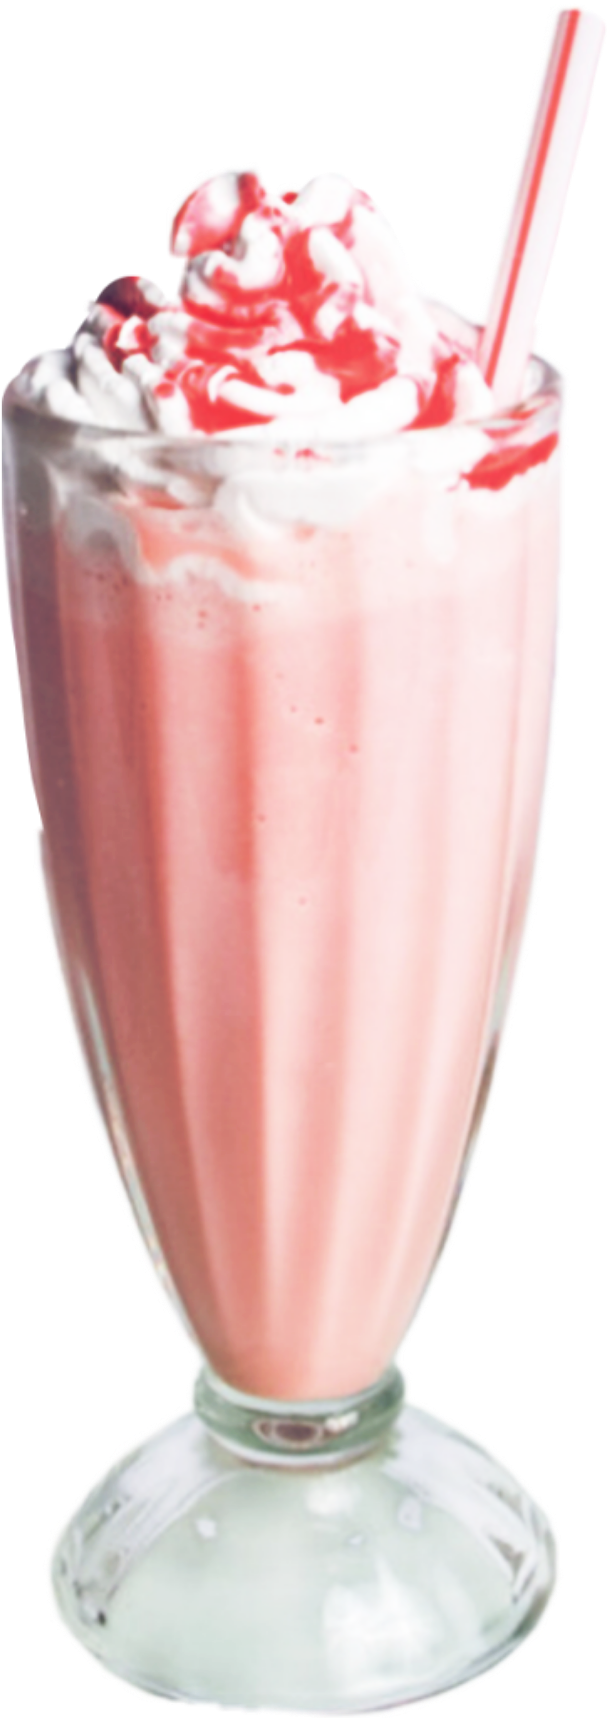 Strawberry Milkshake Delight.jpg